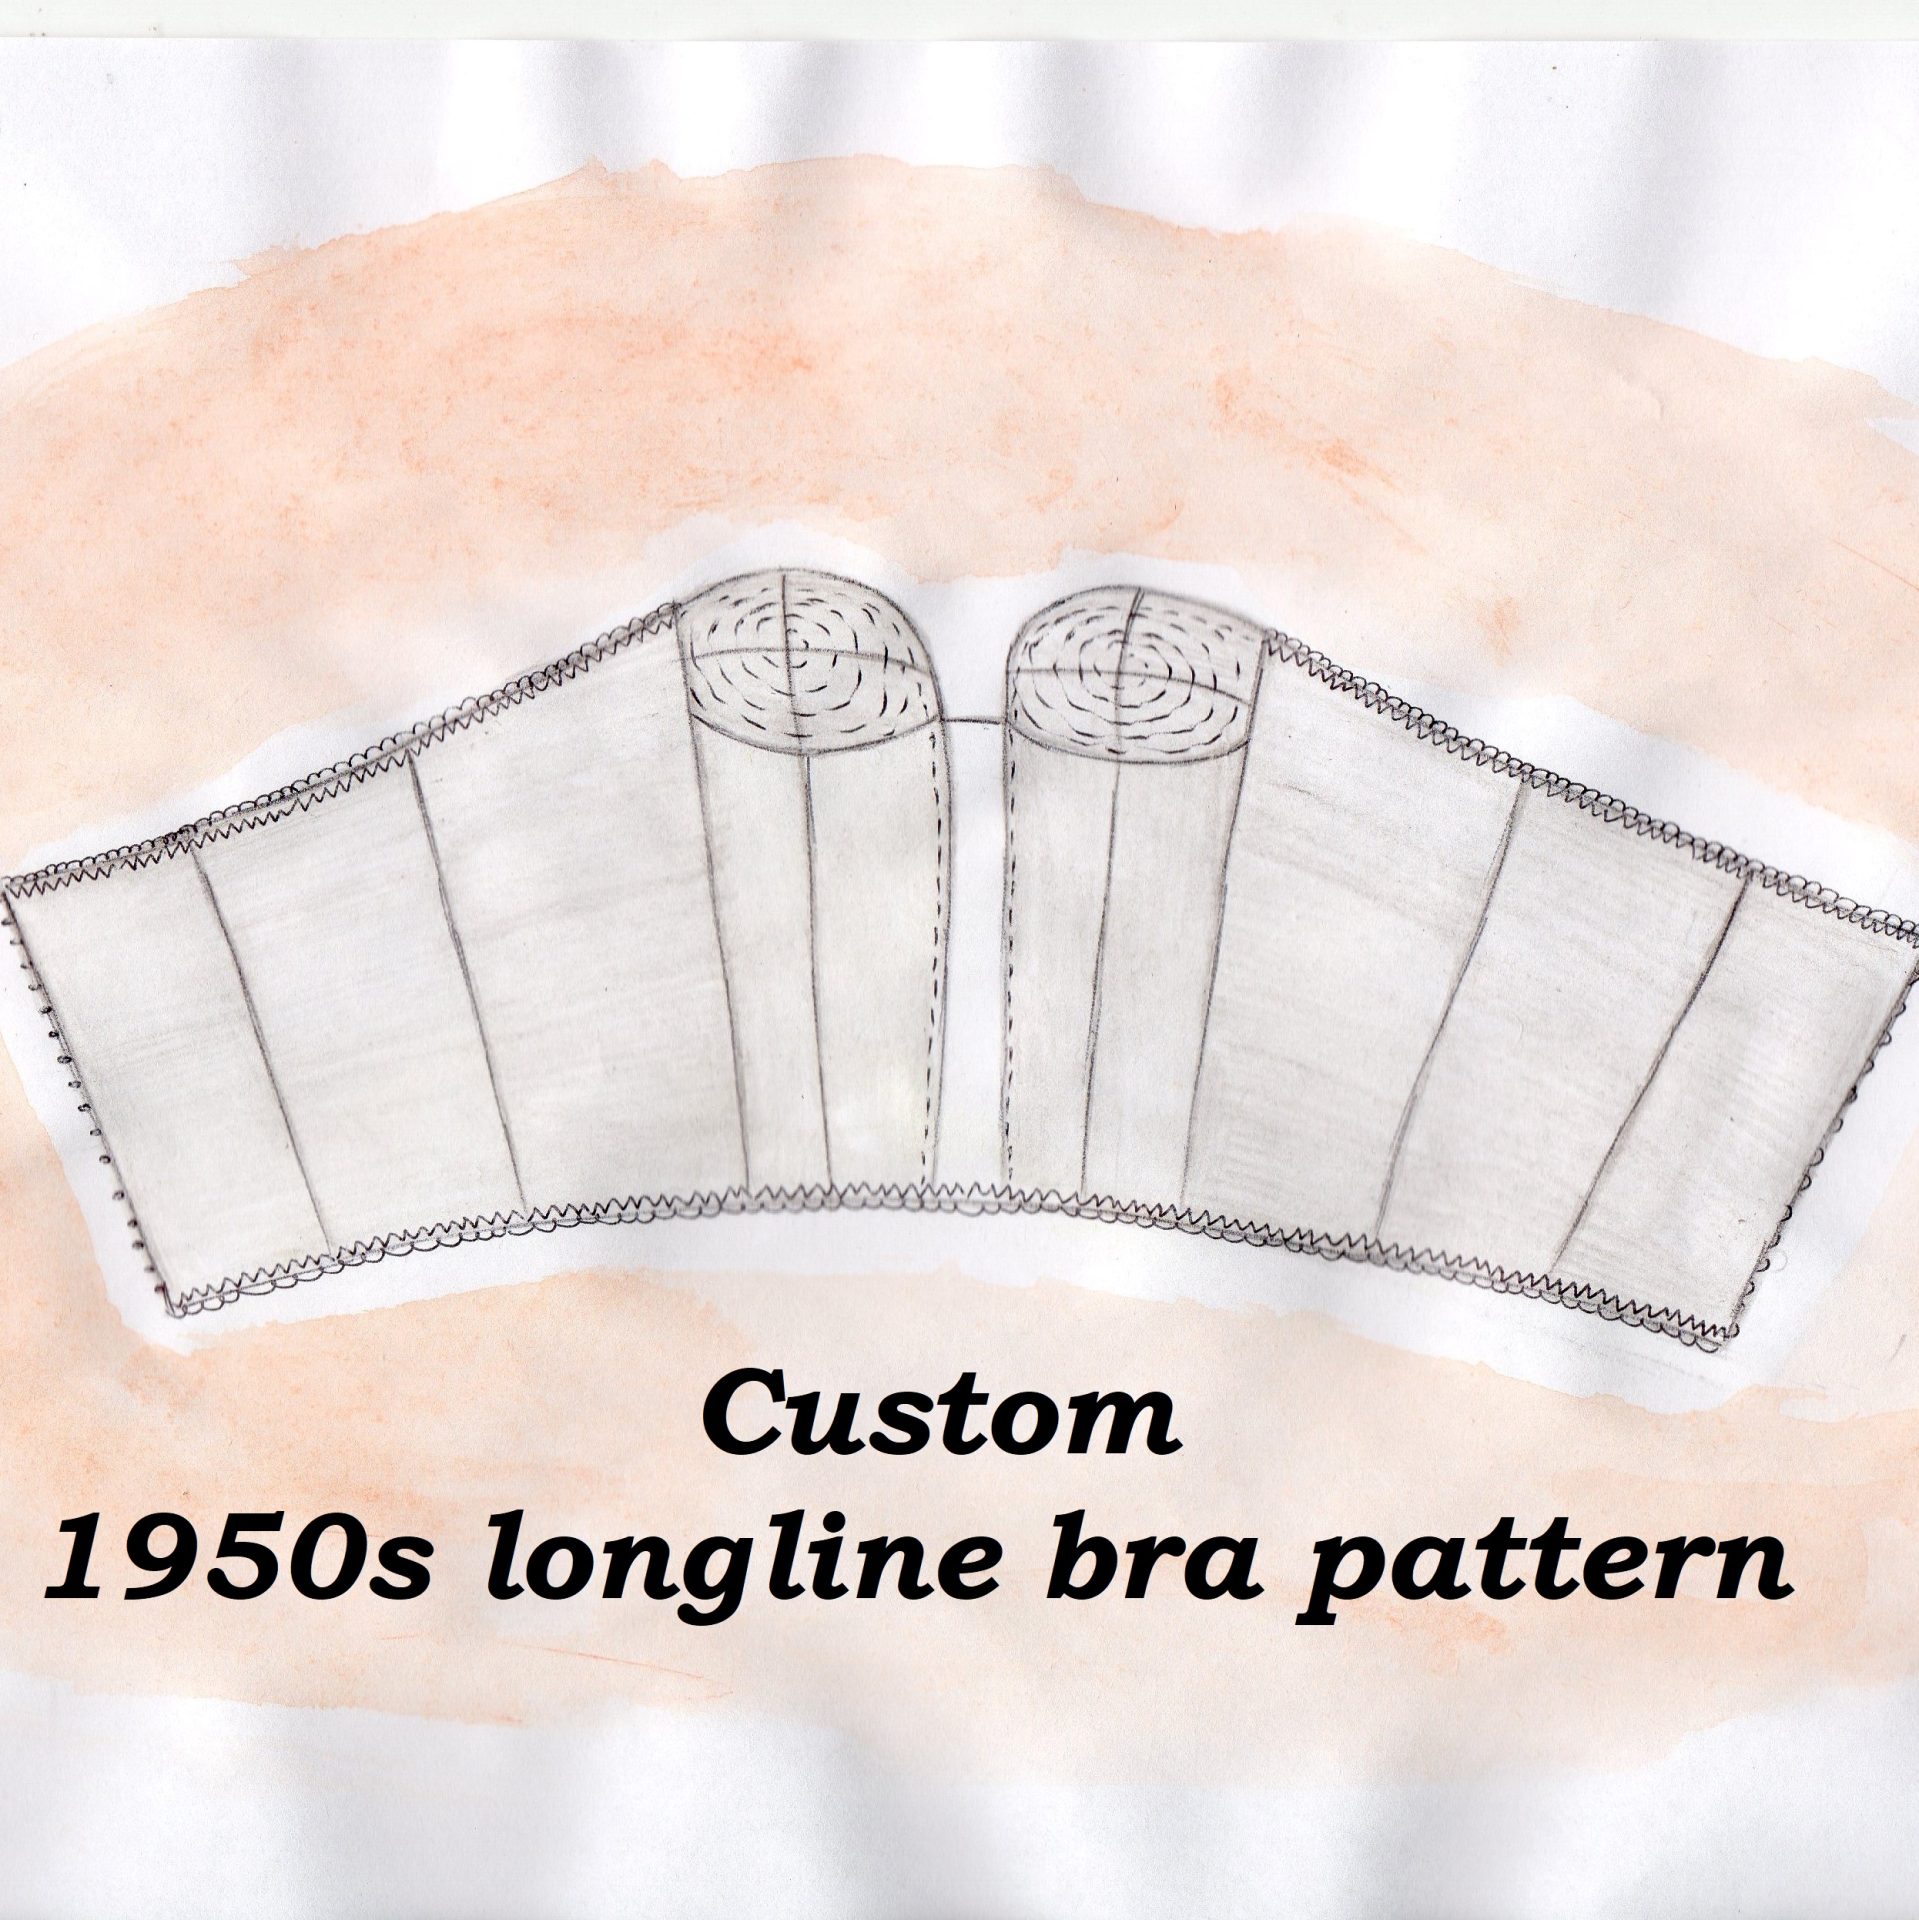 1950s longline bra pattern, Custom bullet bra pattern